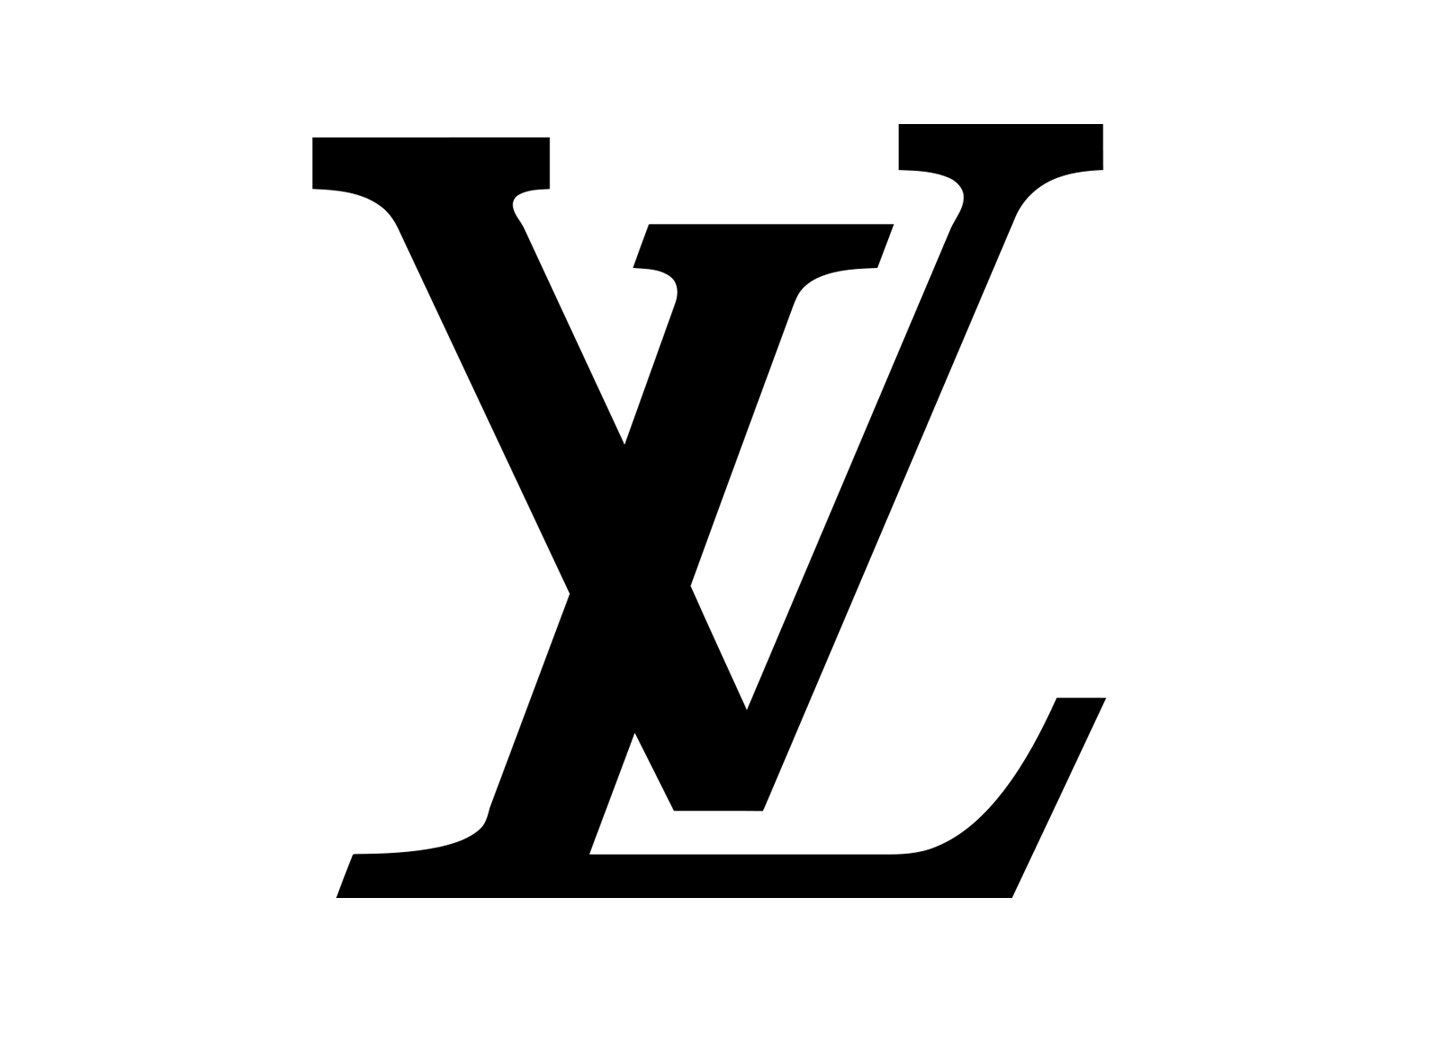 lv logo jewelry